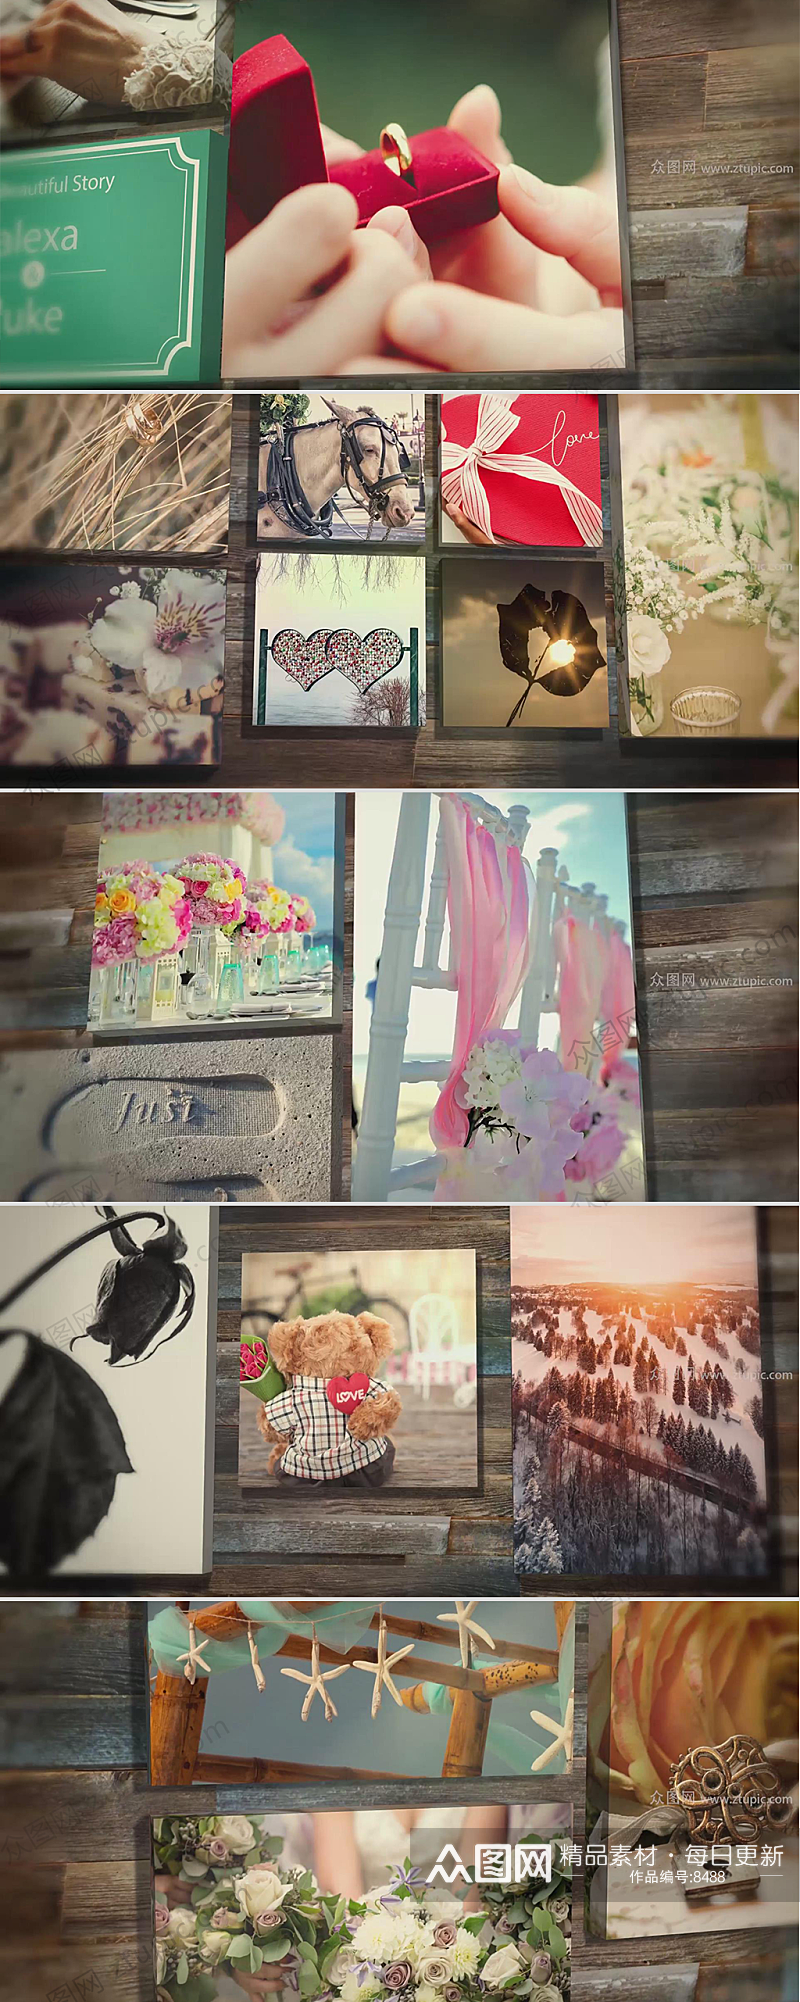 浪漫温馨回忆照片墙婚礼视频素材